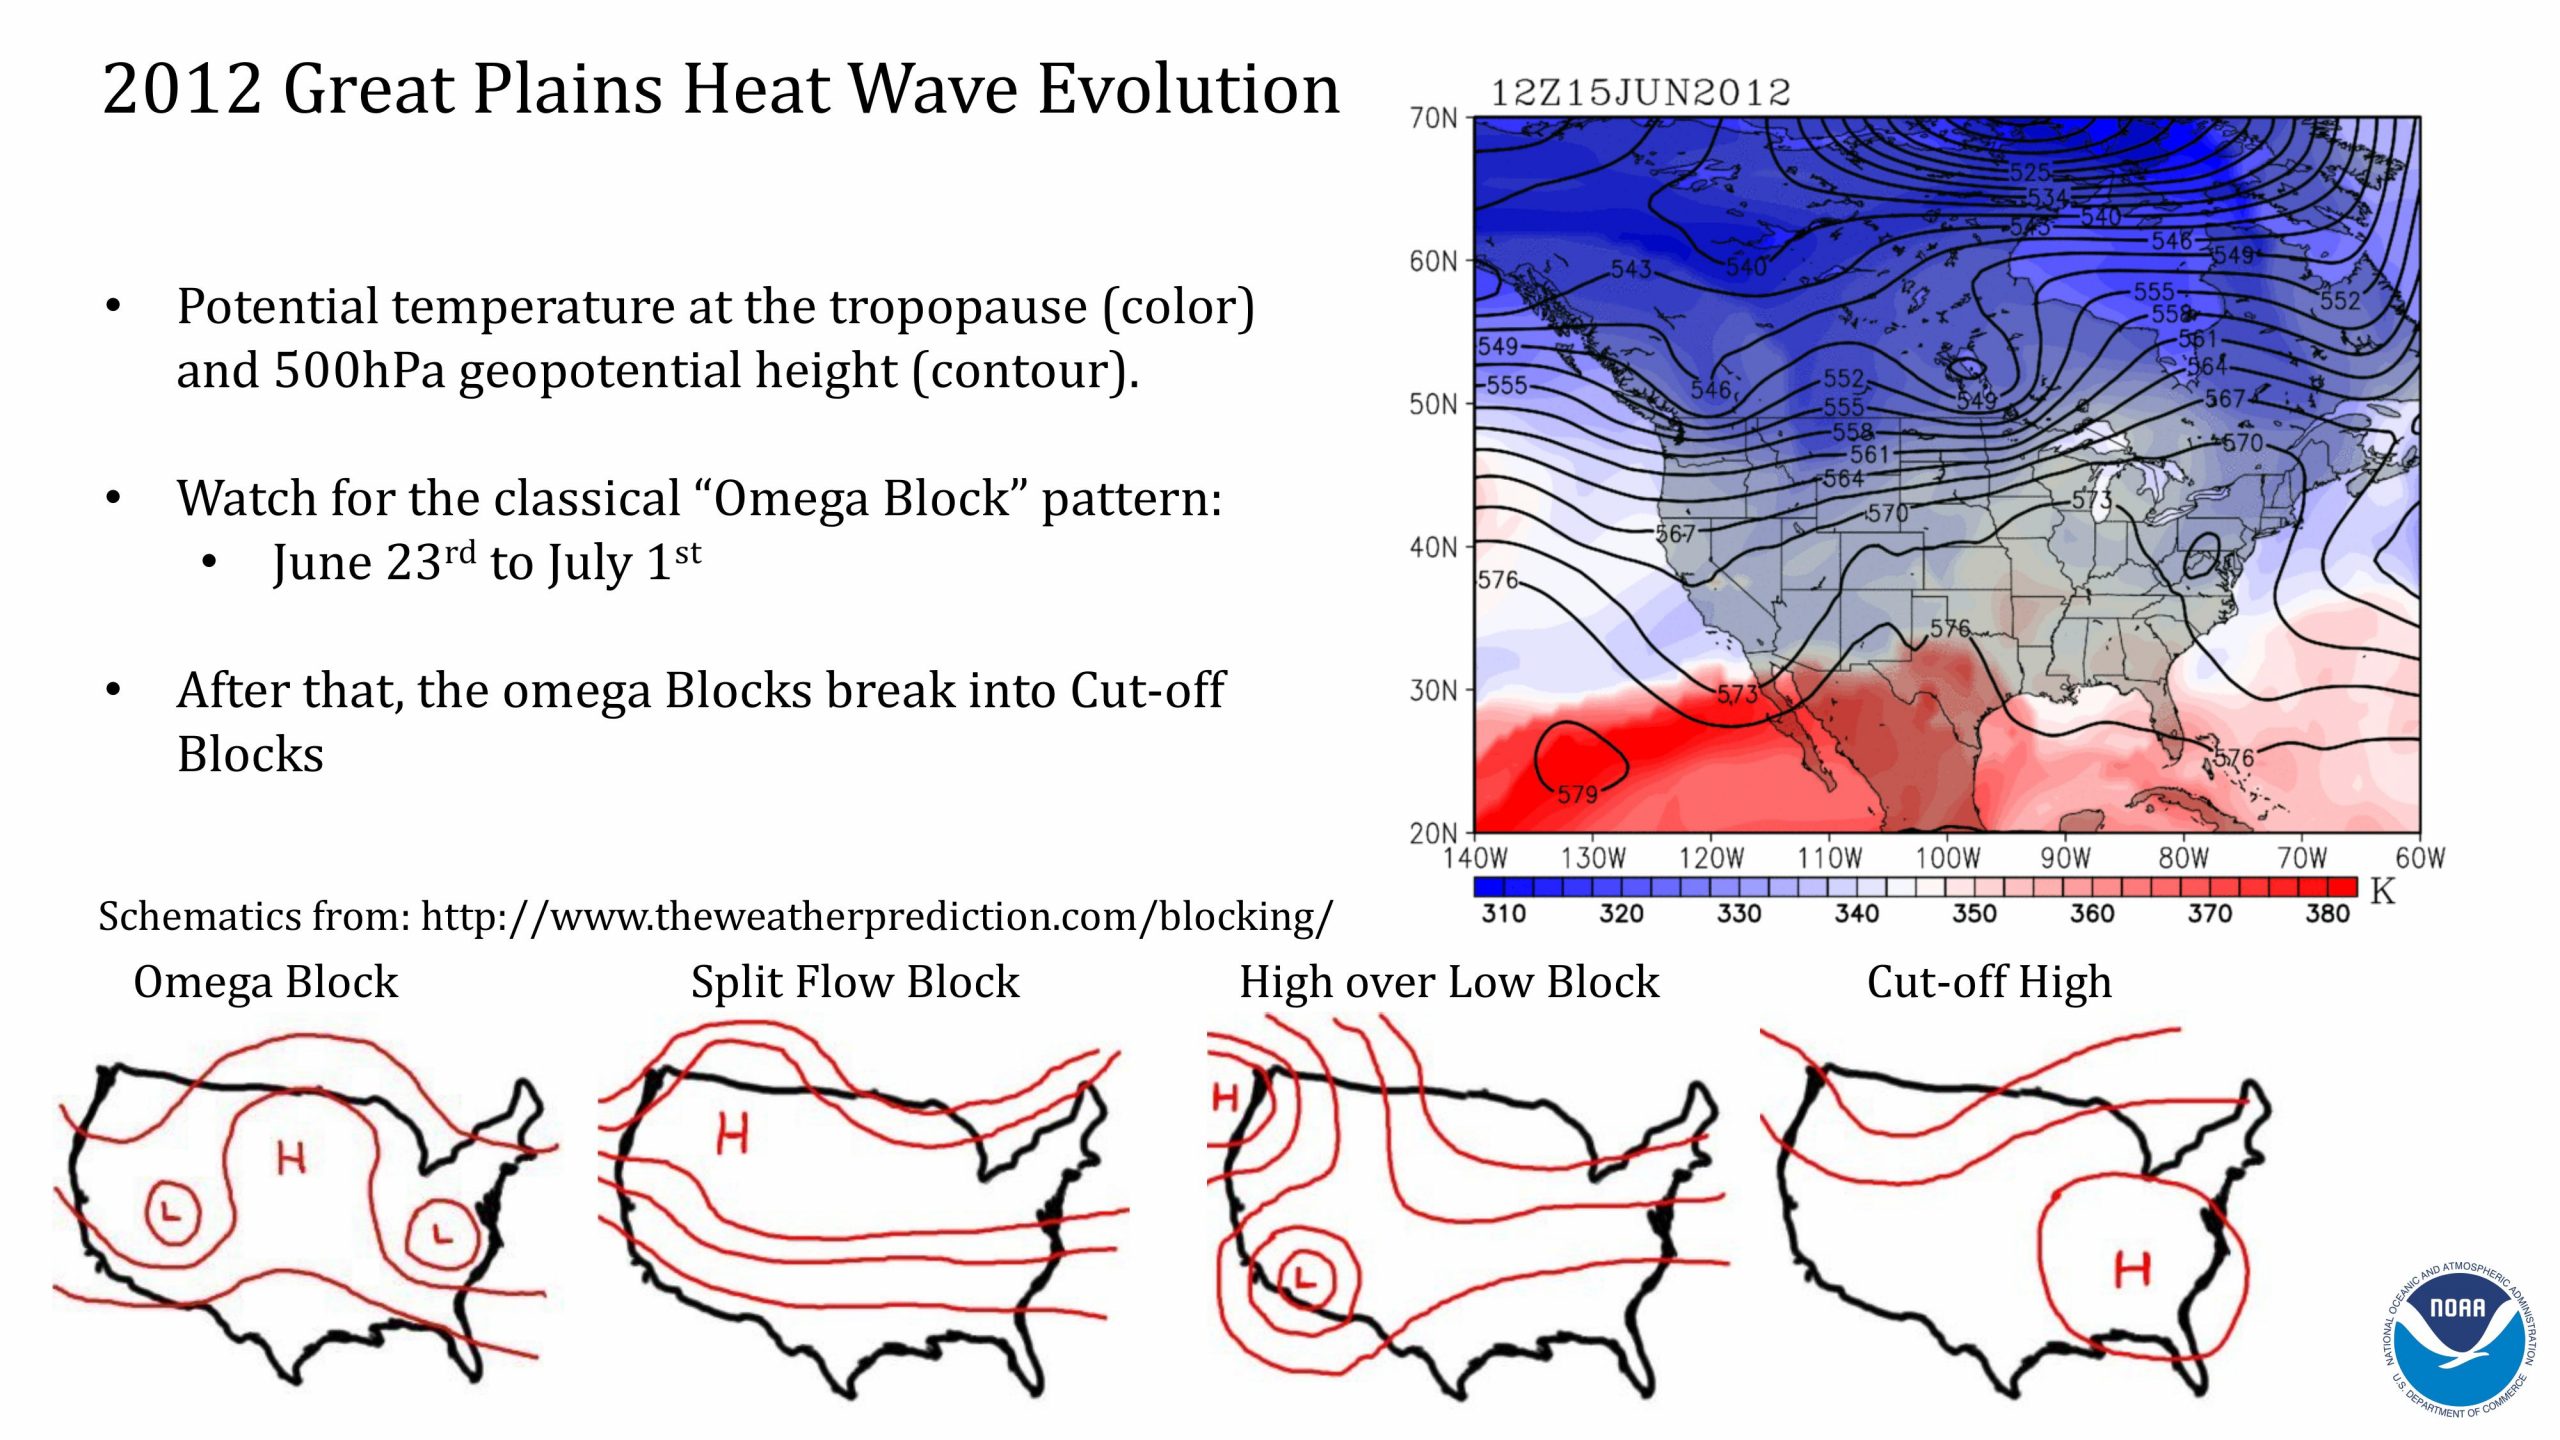 Presentación de Hosmay López sobre los monzones y las olas de calor. Diapositiva 7